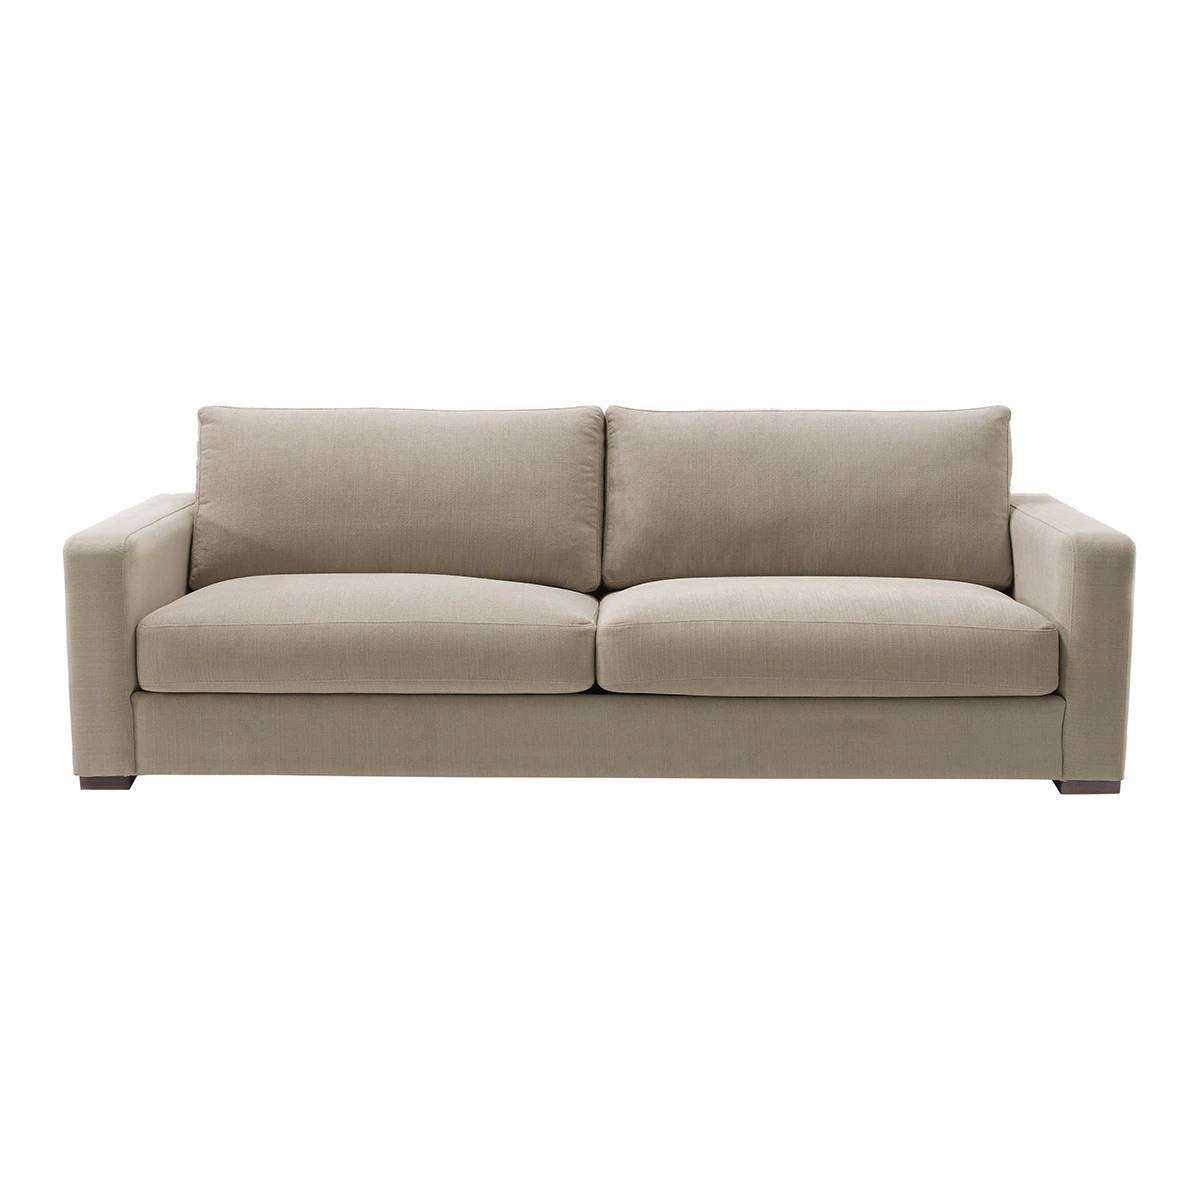 sofa-tapizado-de-3-plazas-mold-el-corte-ingles